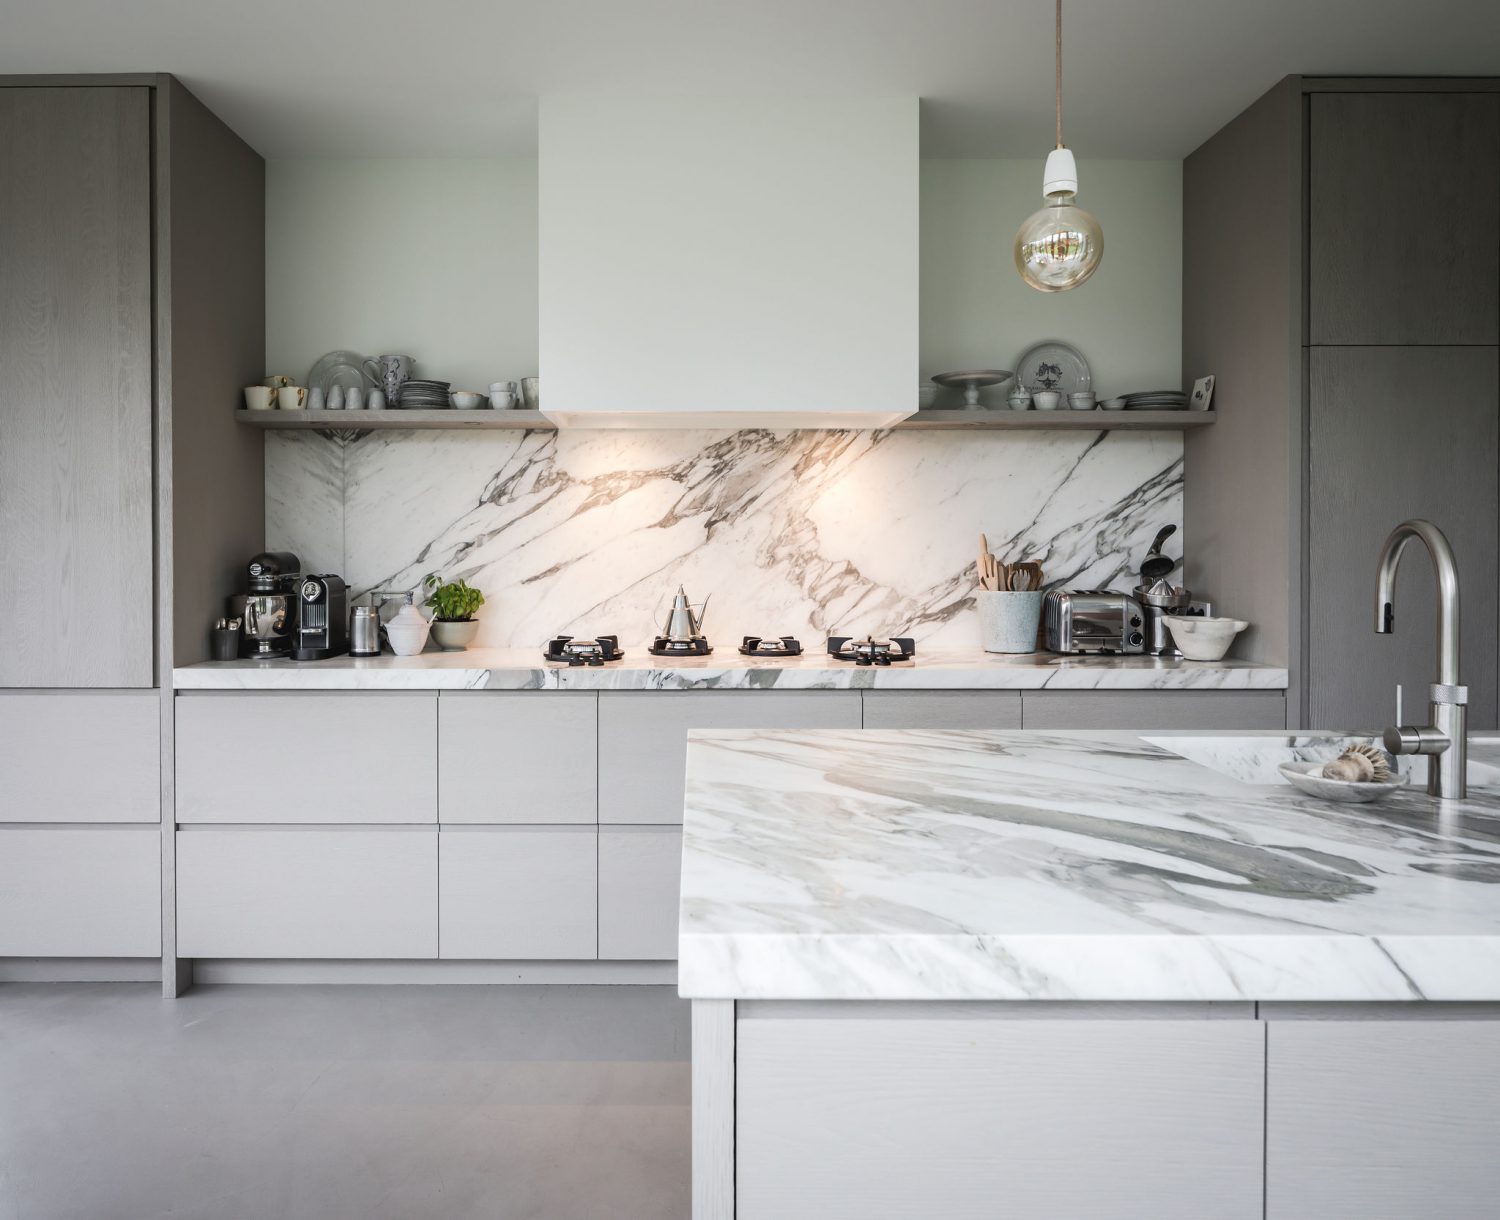 Piet-Jan van den Kommer | Ontwerp & Design | Luxe keuken